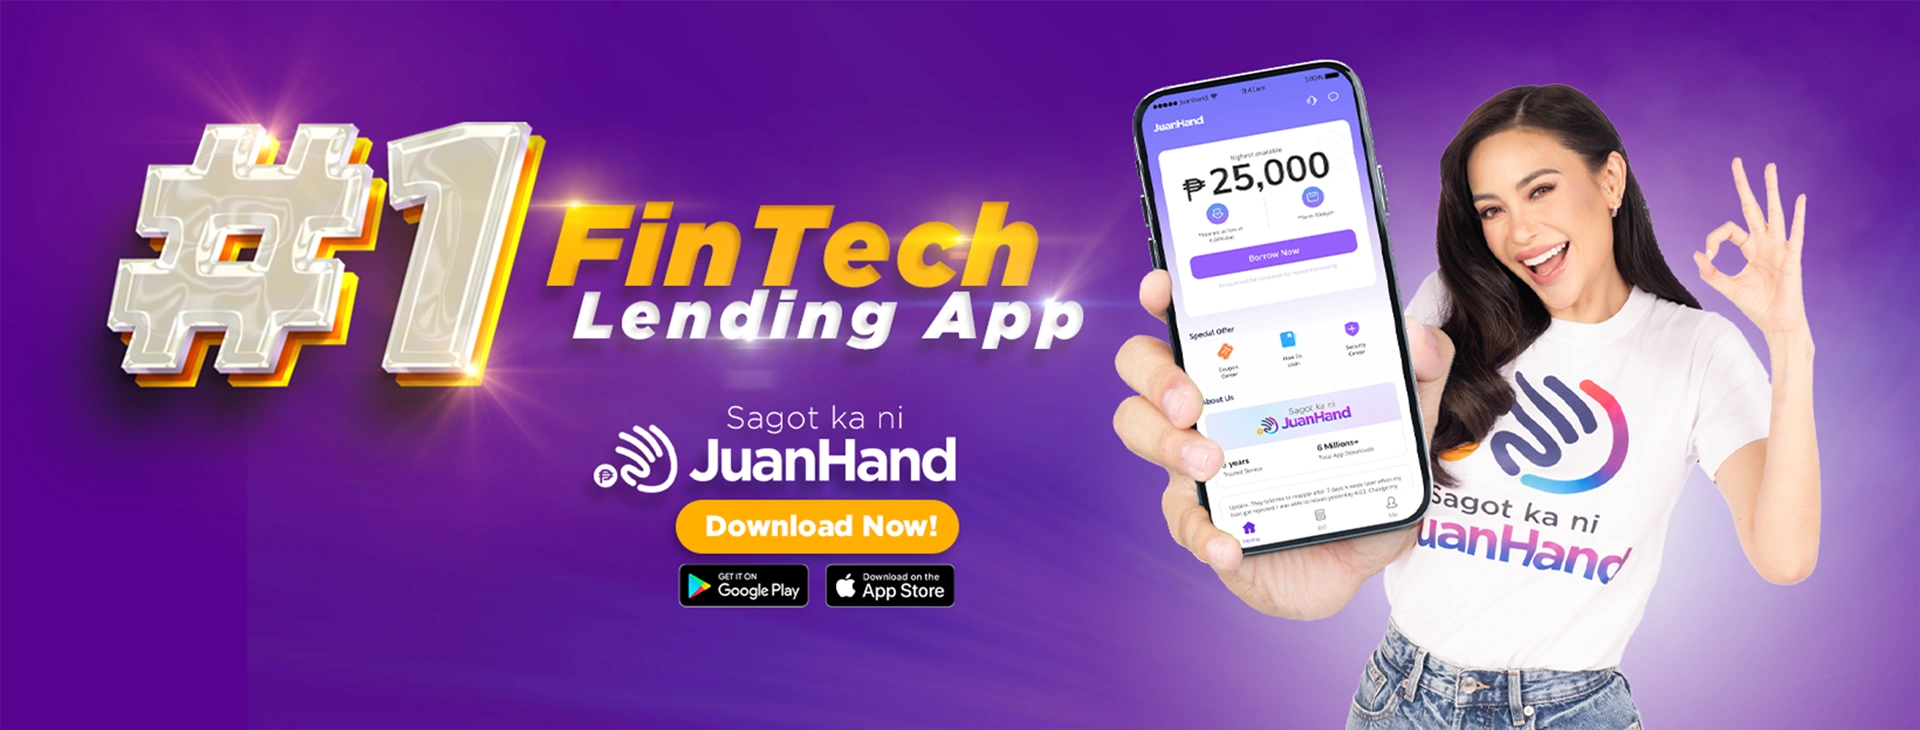 Number 1 Fintech Lending App ft Arci Munoz